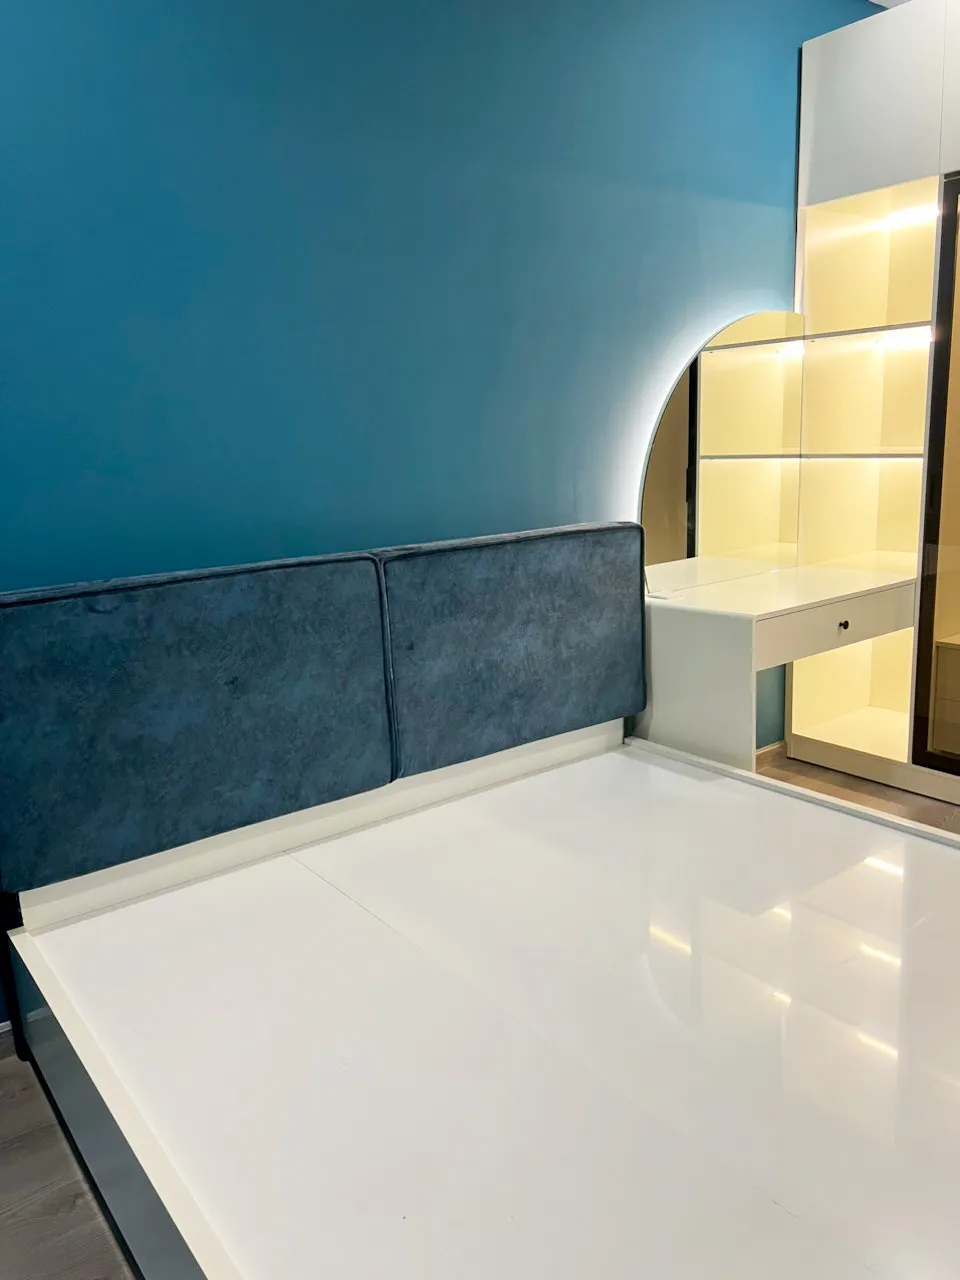 Hoàn thiện nội thất phòng ngủ Căn hộ chung cư Celadon Tân Phú 95m2 mang phong cách Color Block